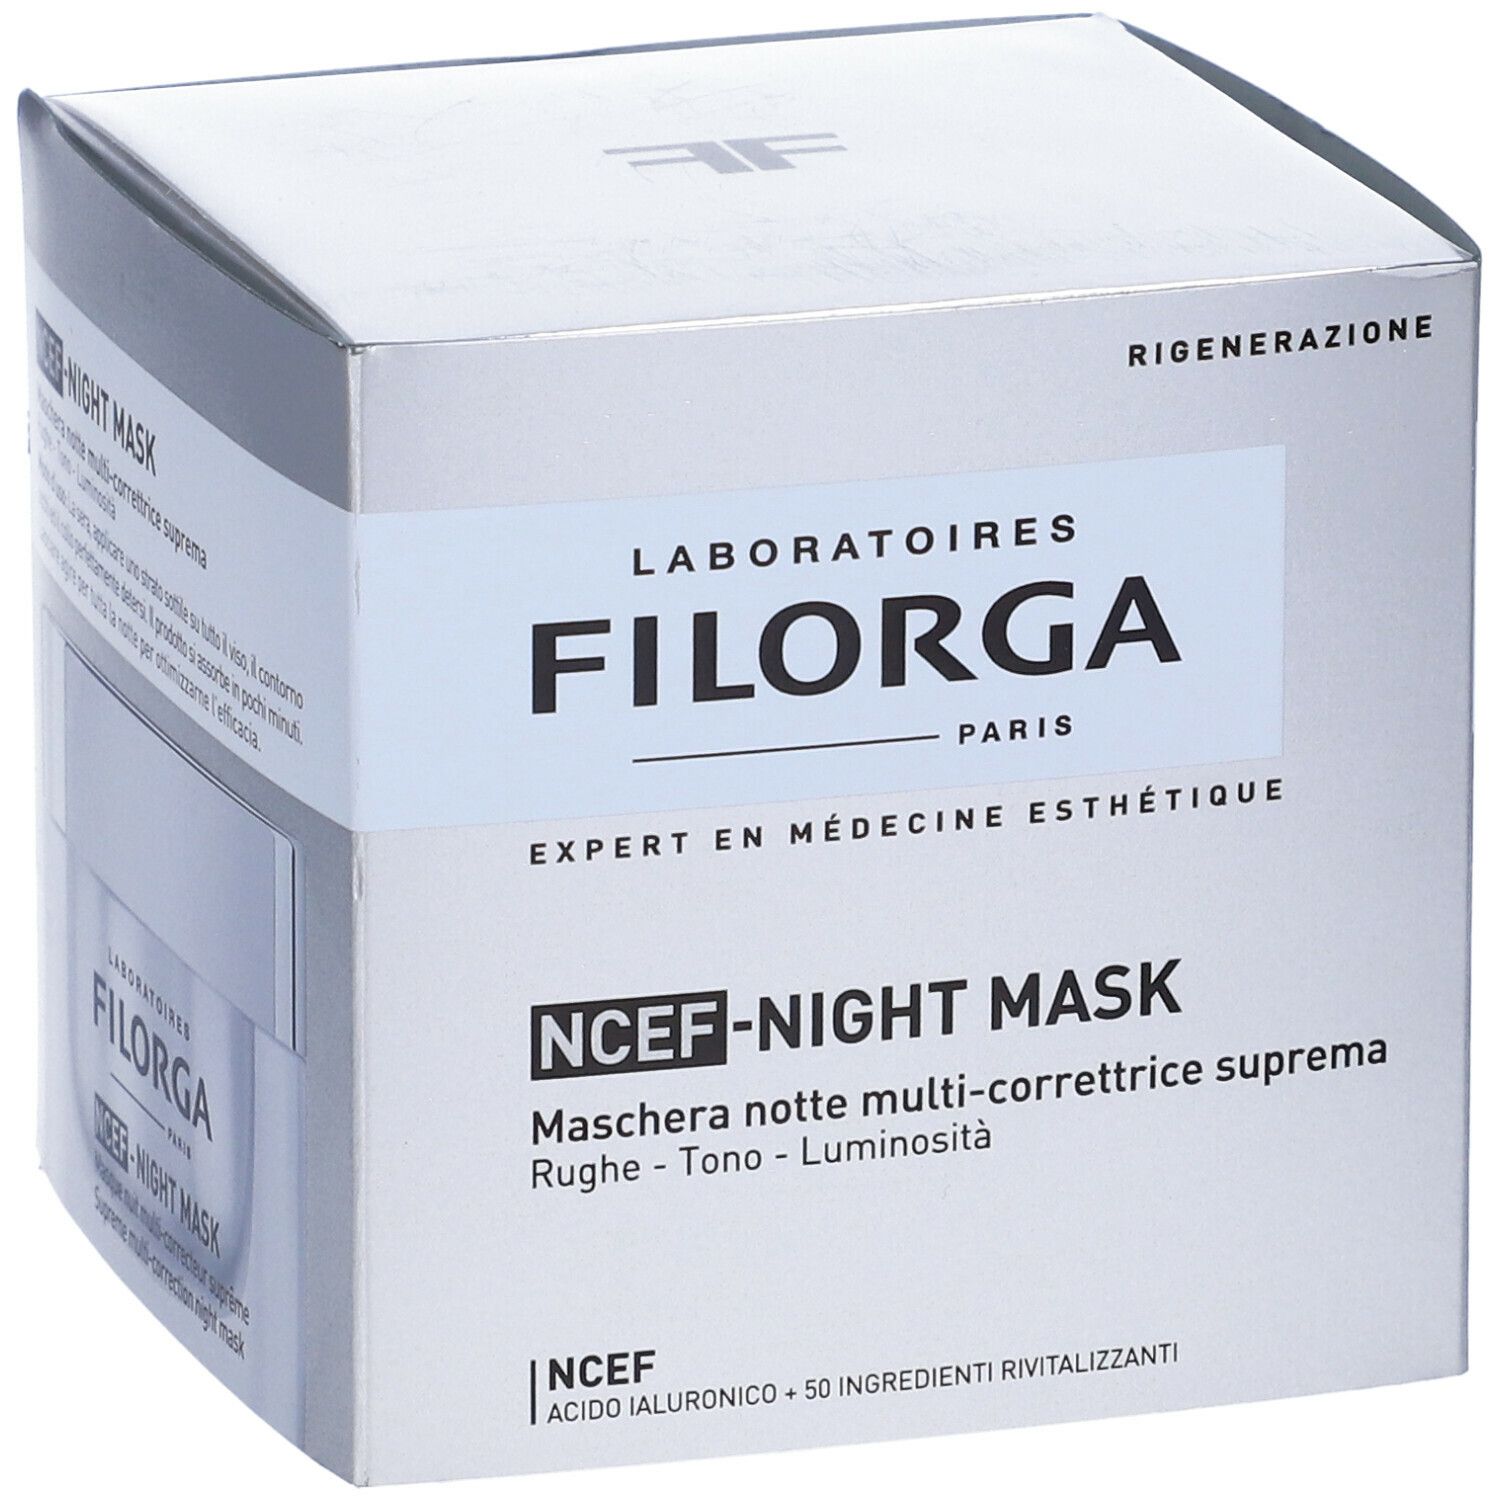 FILORGA NCEF-NIGHT MASK